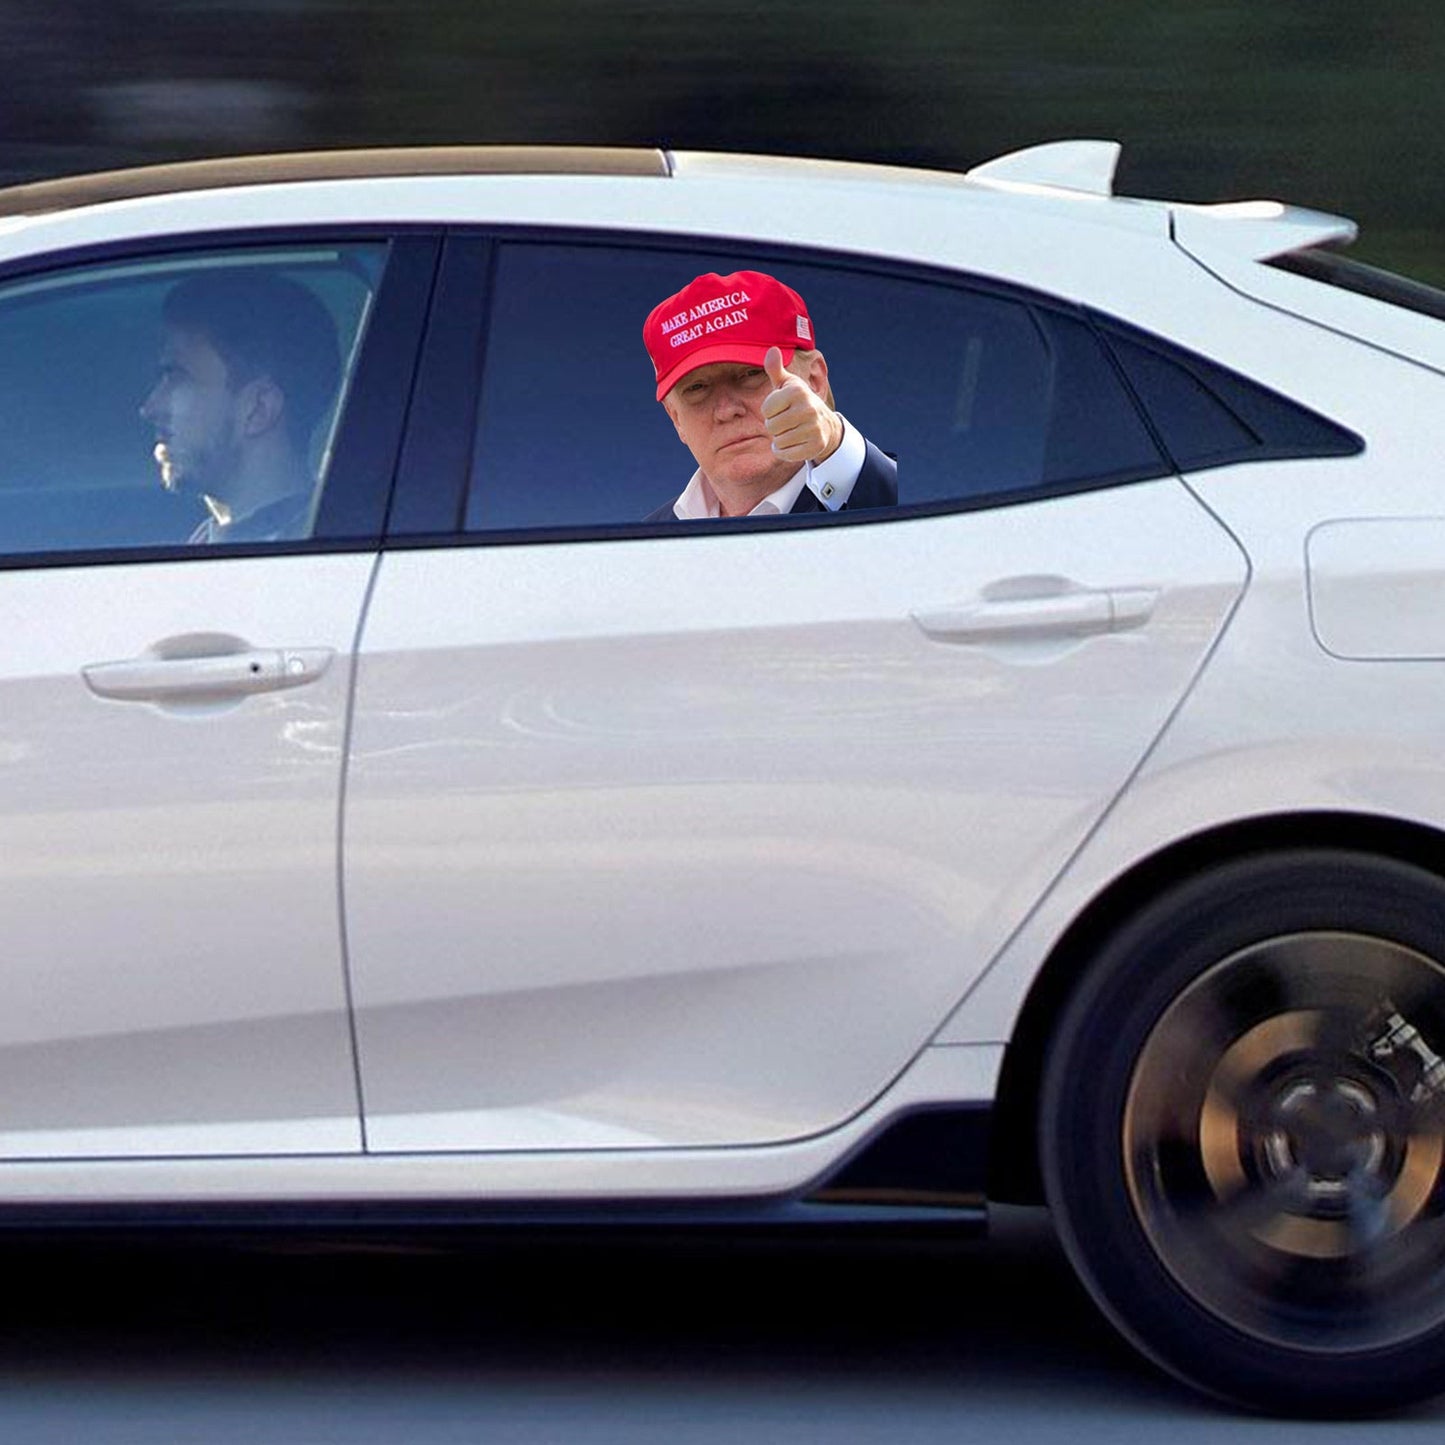 Décalcomanie de fenêtre de voiture grandeur nature Passage passager avec Trump President 2020 L